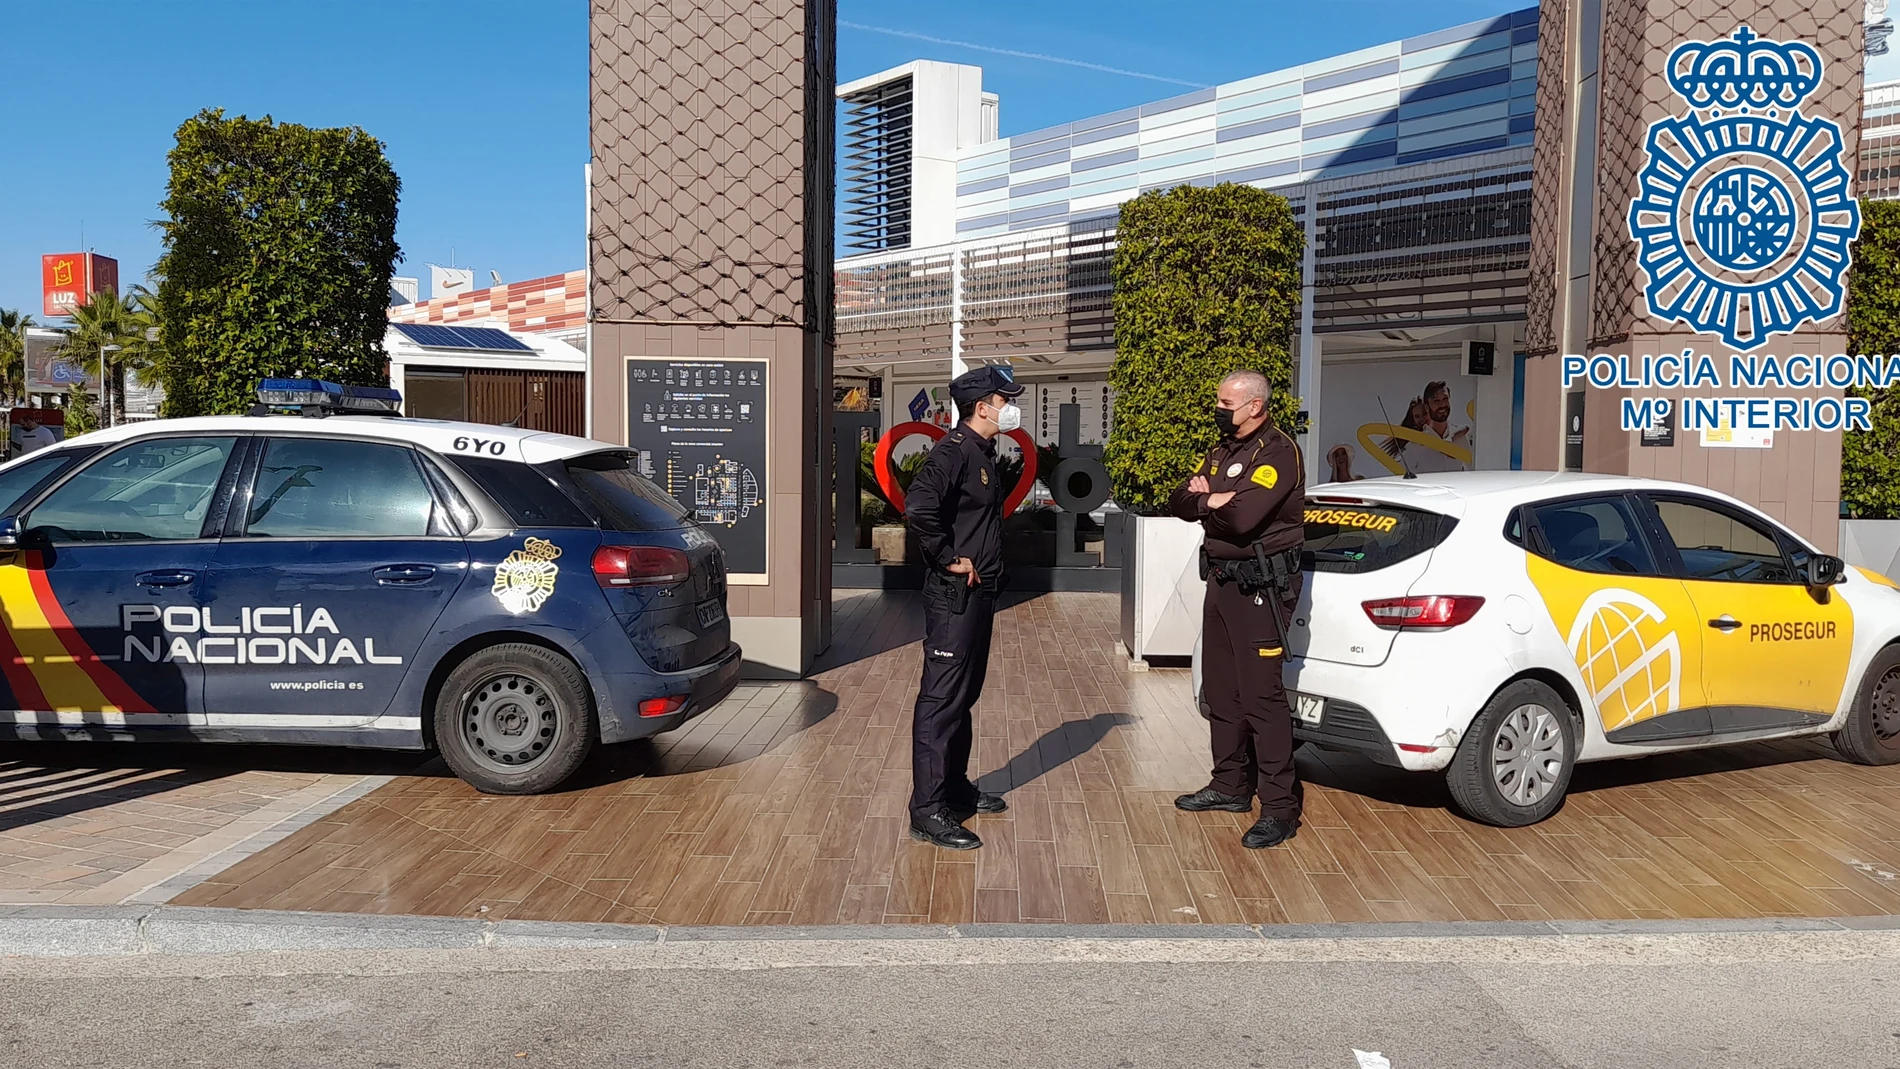 Patrulla de la Policía Nacional en Jerez. POLICÍA NACIONAL